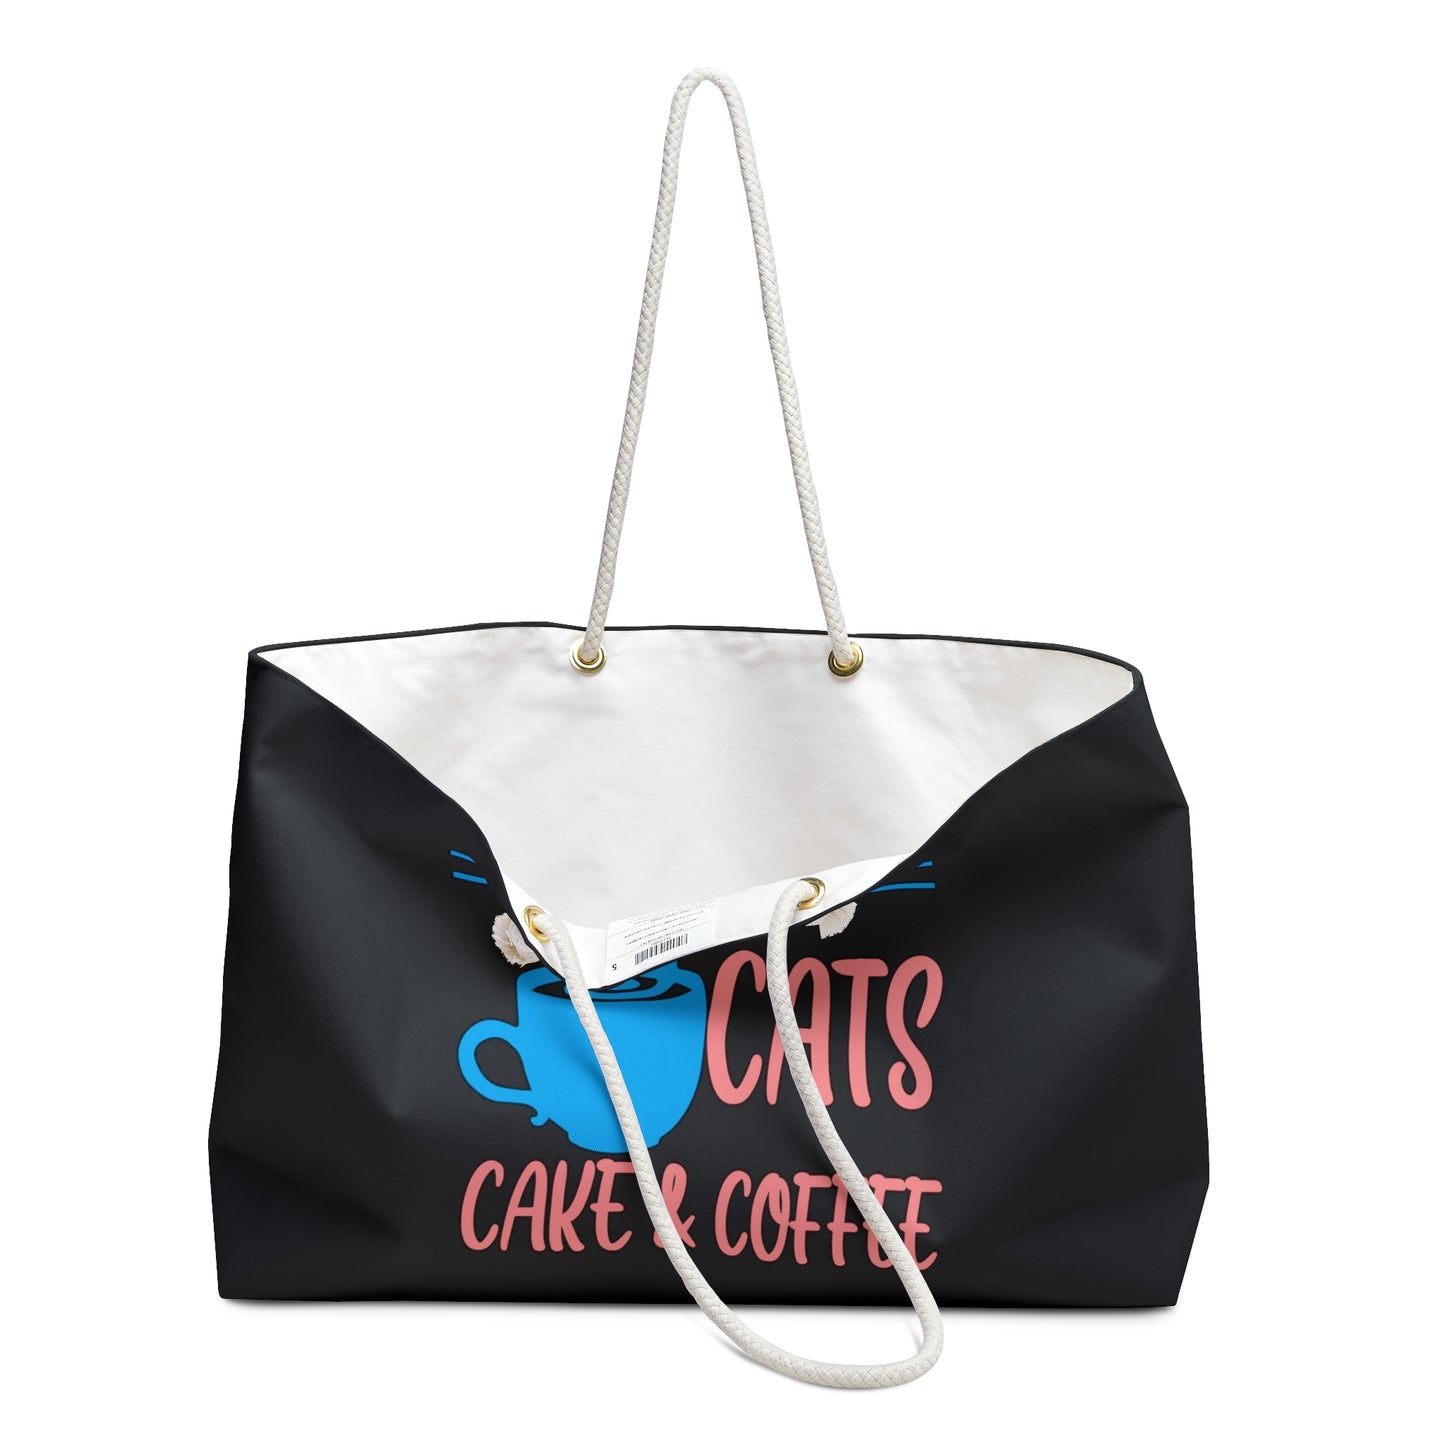 I Want Cats, Cake & C☕ffee Weekender Bag (Black)